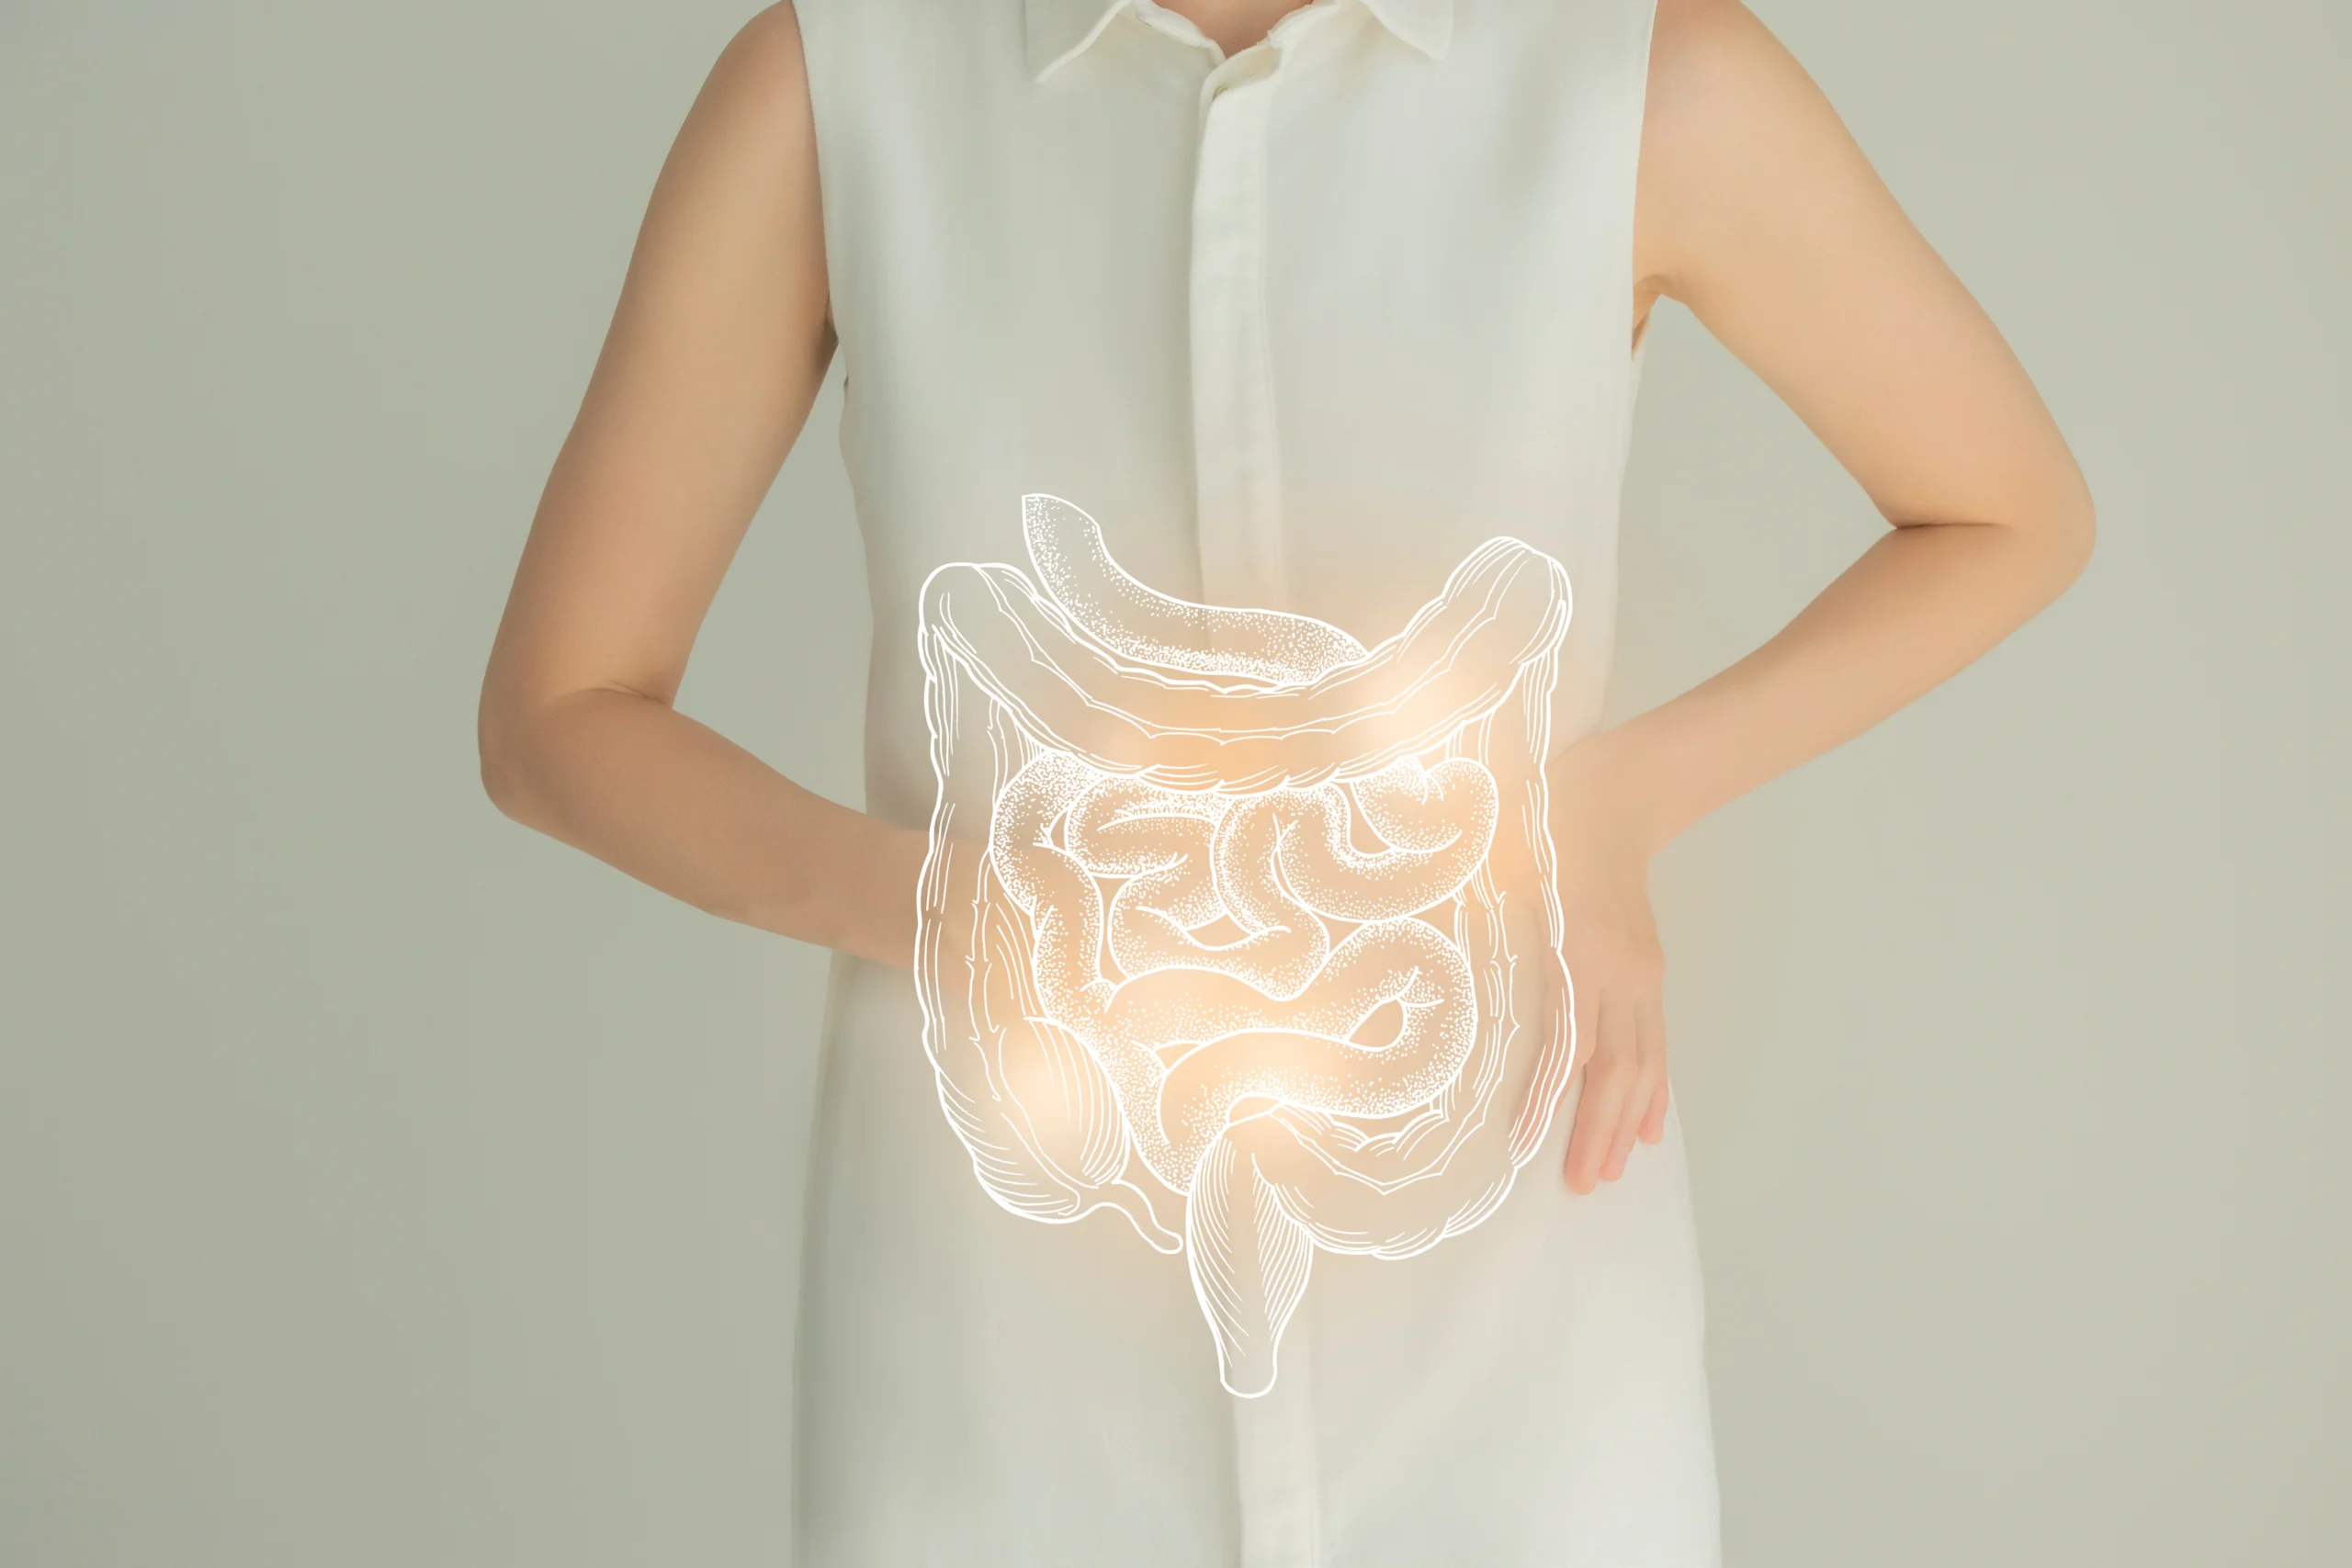 Cierpisz na przewlekłe zaparcia? Dowiedz się, w jaki sposób zadbać o jelita i mikrobiom, by pozbyć się dokuczliwego problemu i czy probiotyk na zaparcia pomoże. Graficzna wizualizacja jelit nałożona na zdjęcie kobiety w białej sukience.